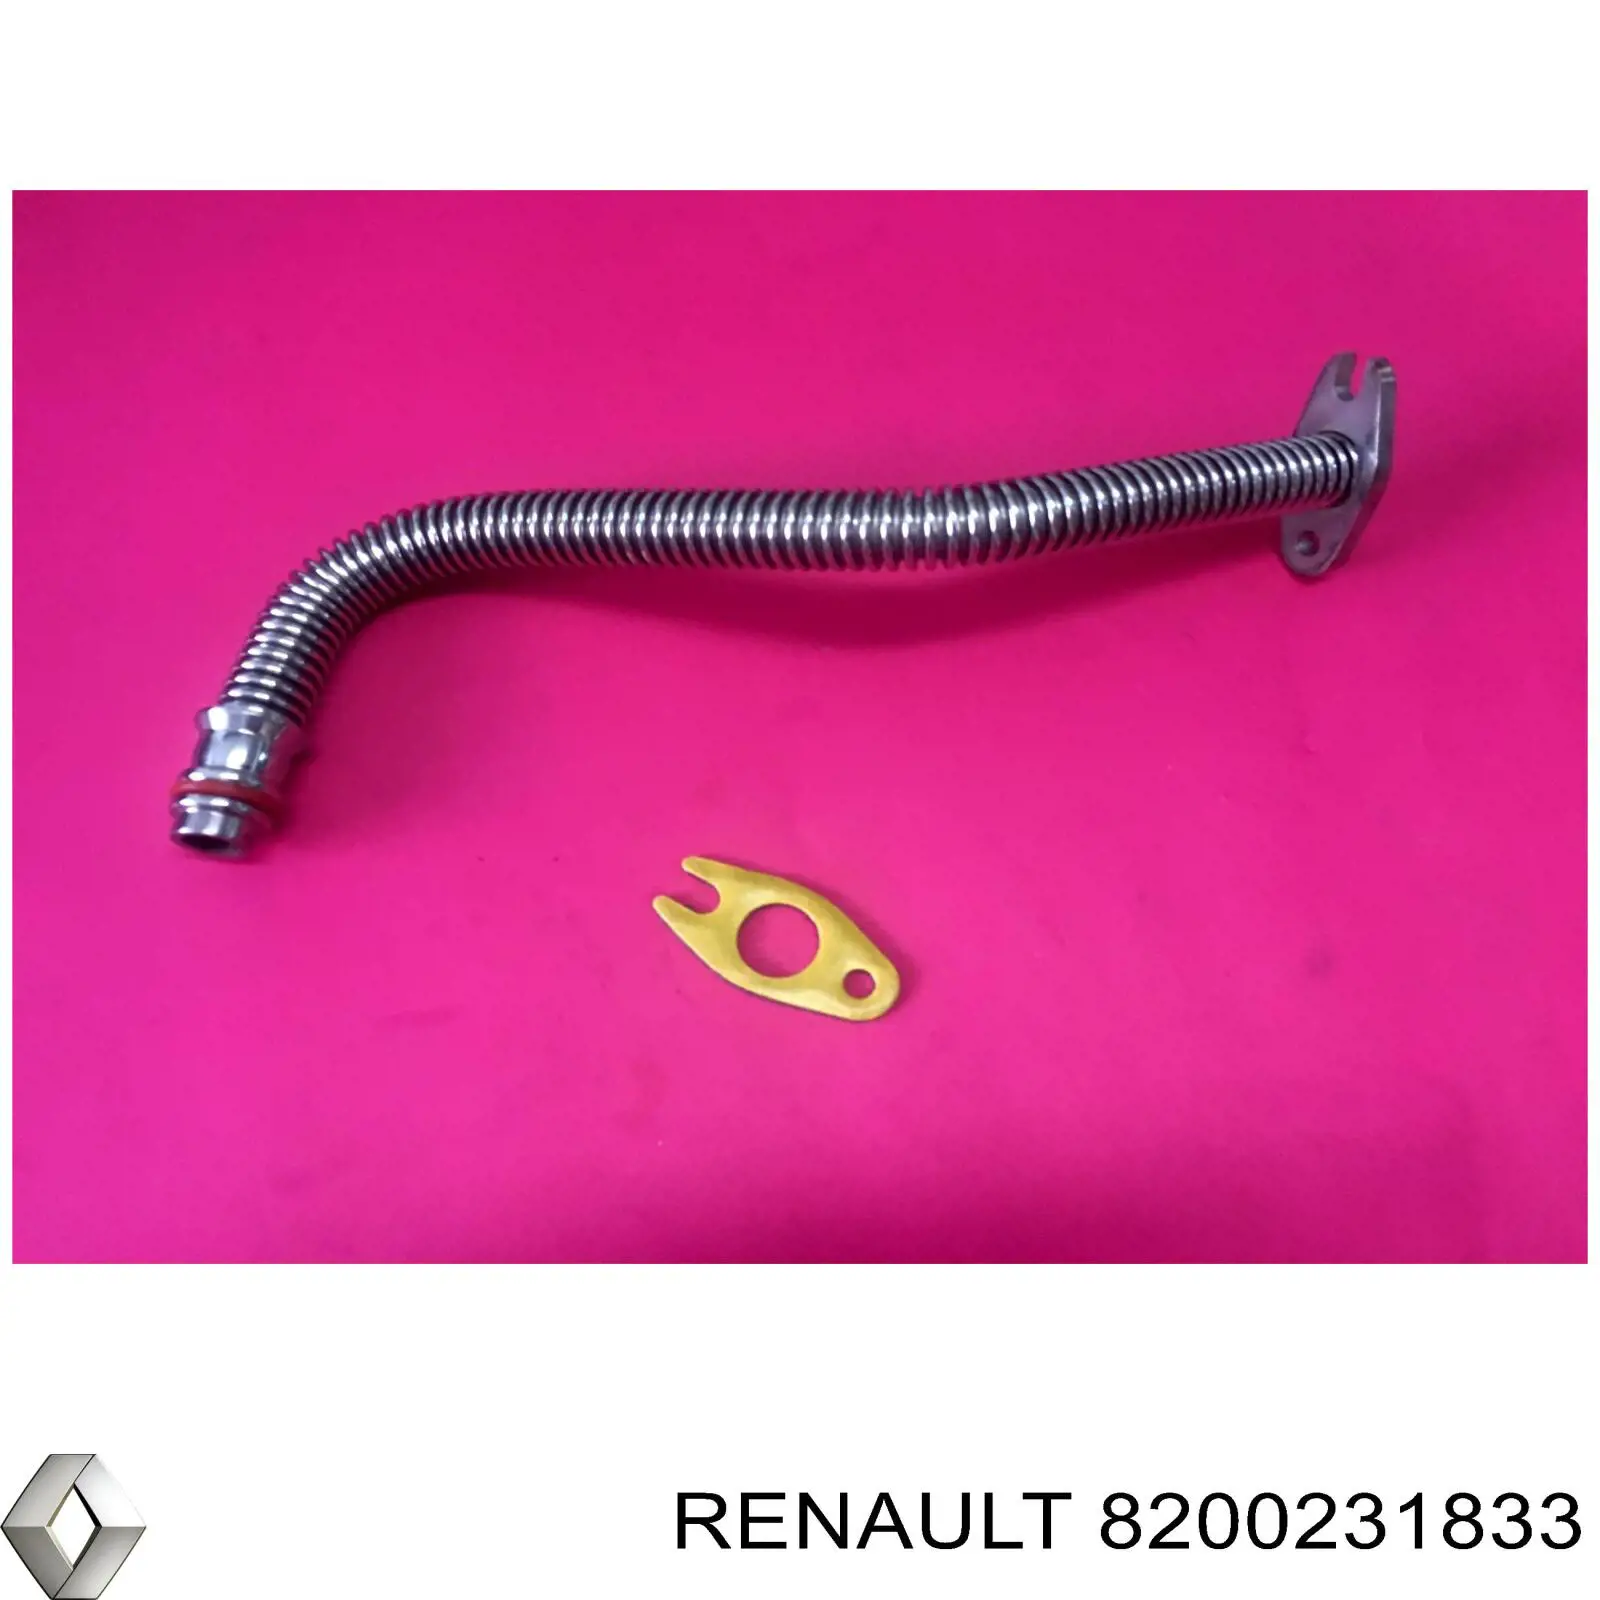 8200231833 Renault (RVI) tubo (mangueira de derivação de óleo de turbina)